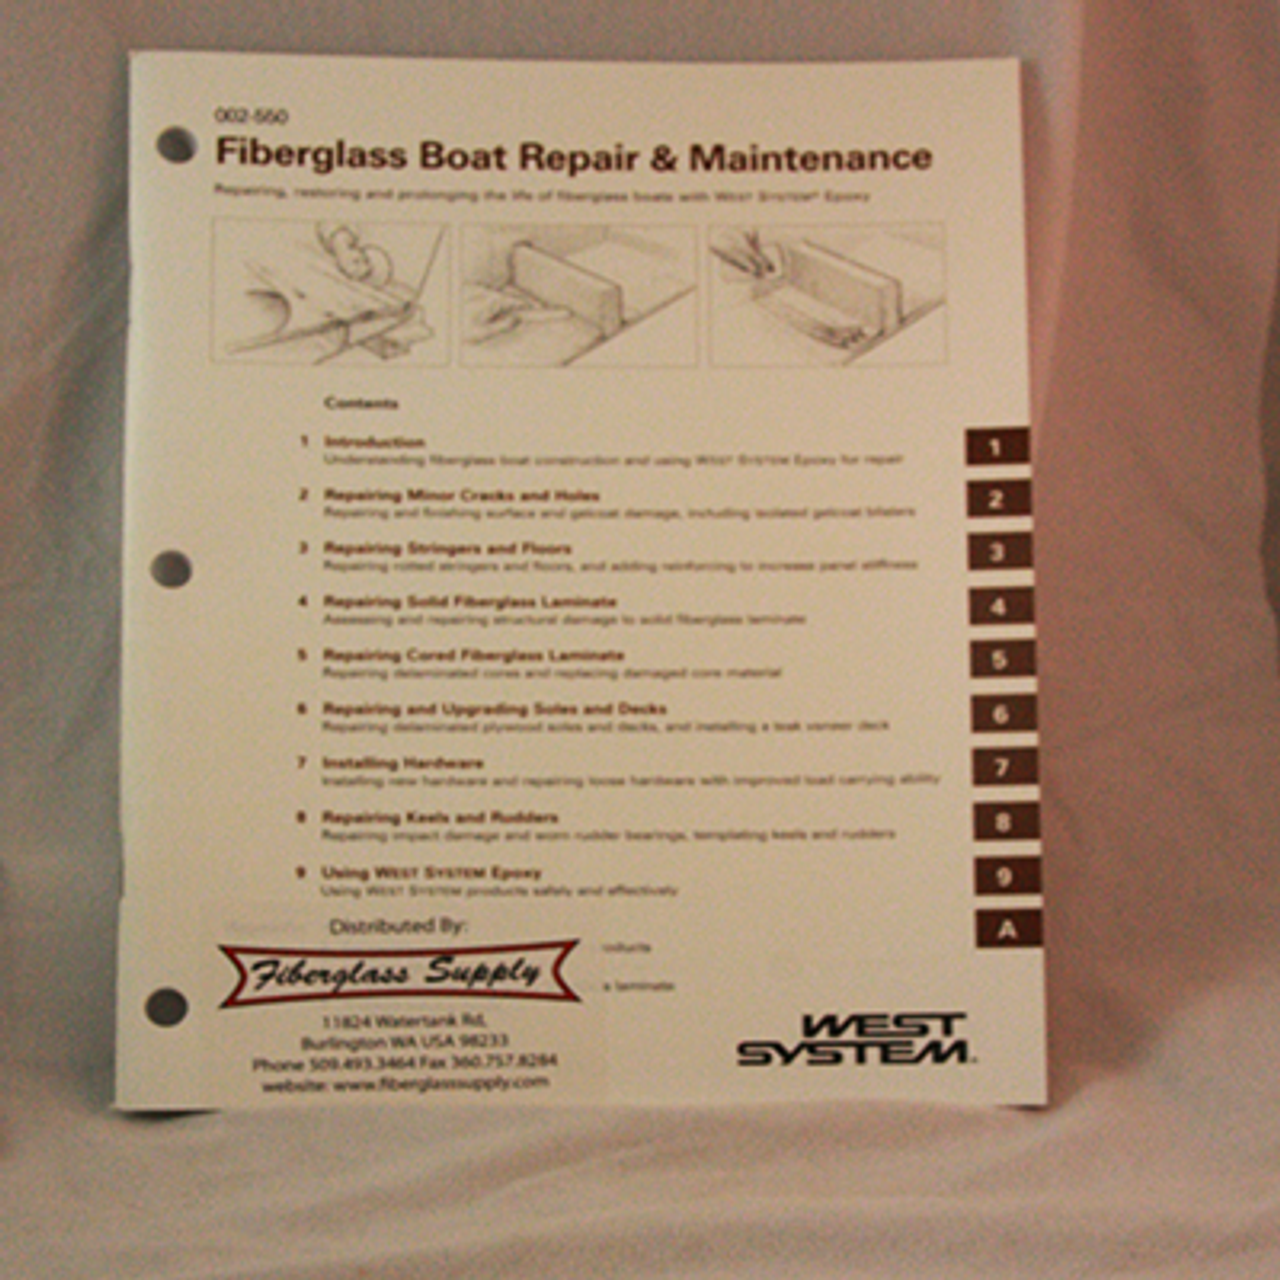 WEST SYSTEM 105-K Fiberglass Boat Repair Kit